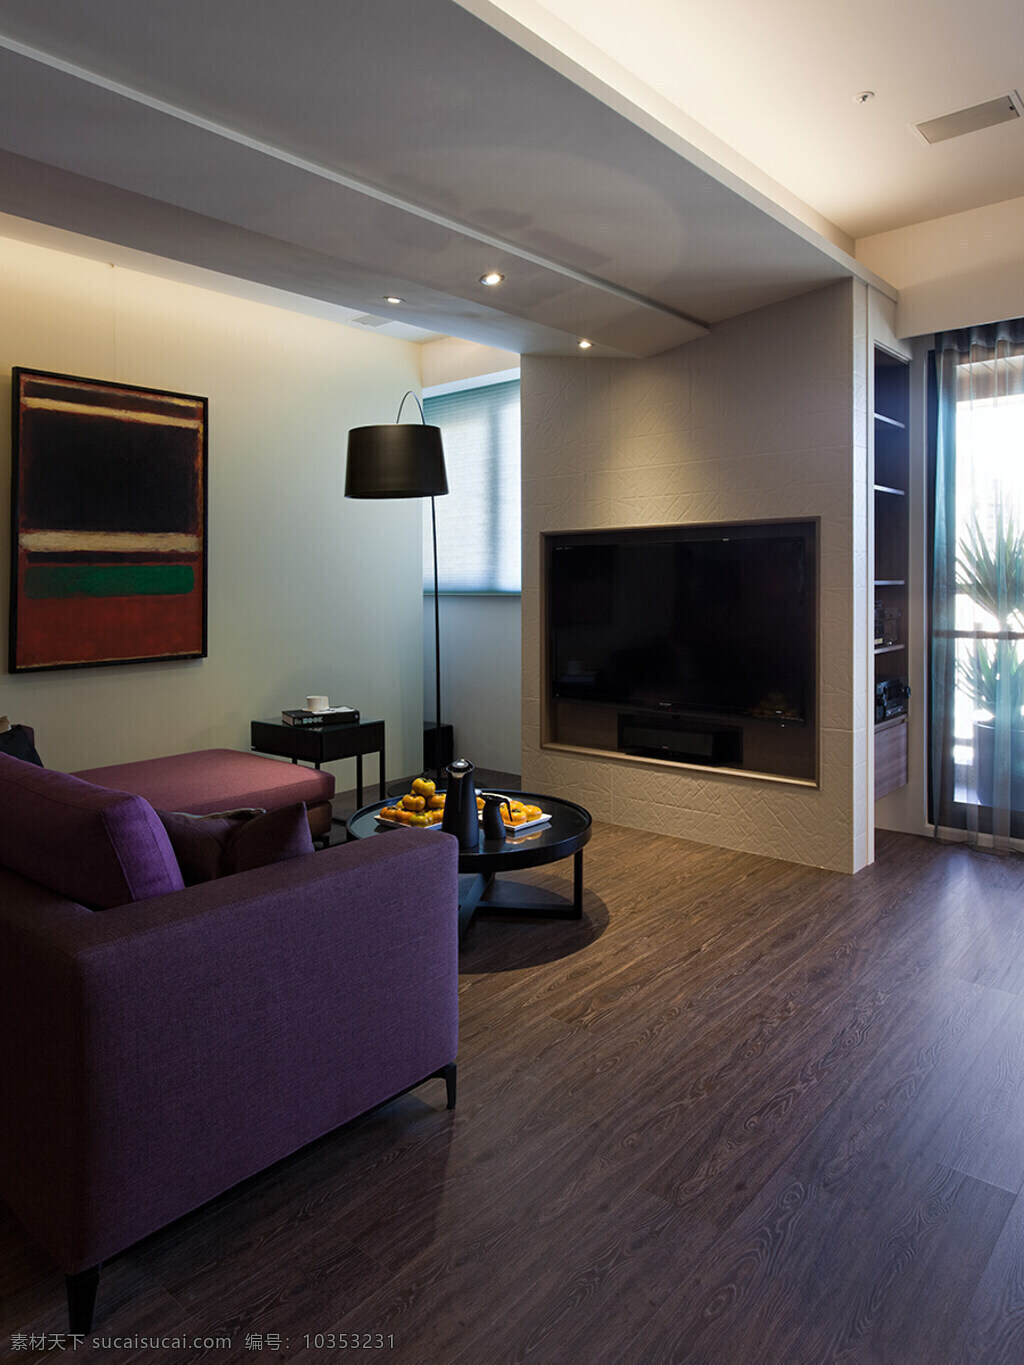 现代 客厅 漆面 落地灯 室内装修 效果图 客厅装修 木地板 紫色沙发 圆形茶几 浅色背景墙